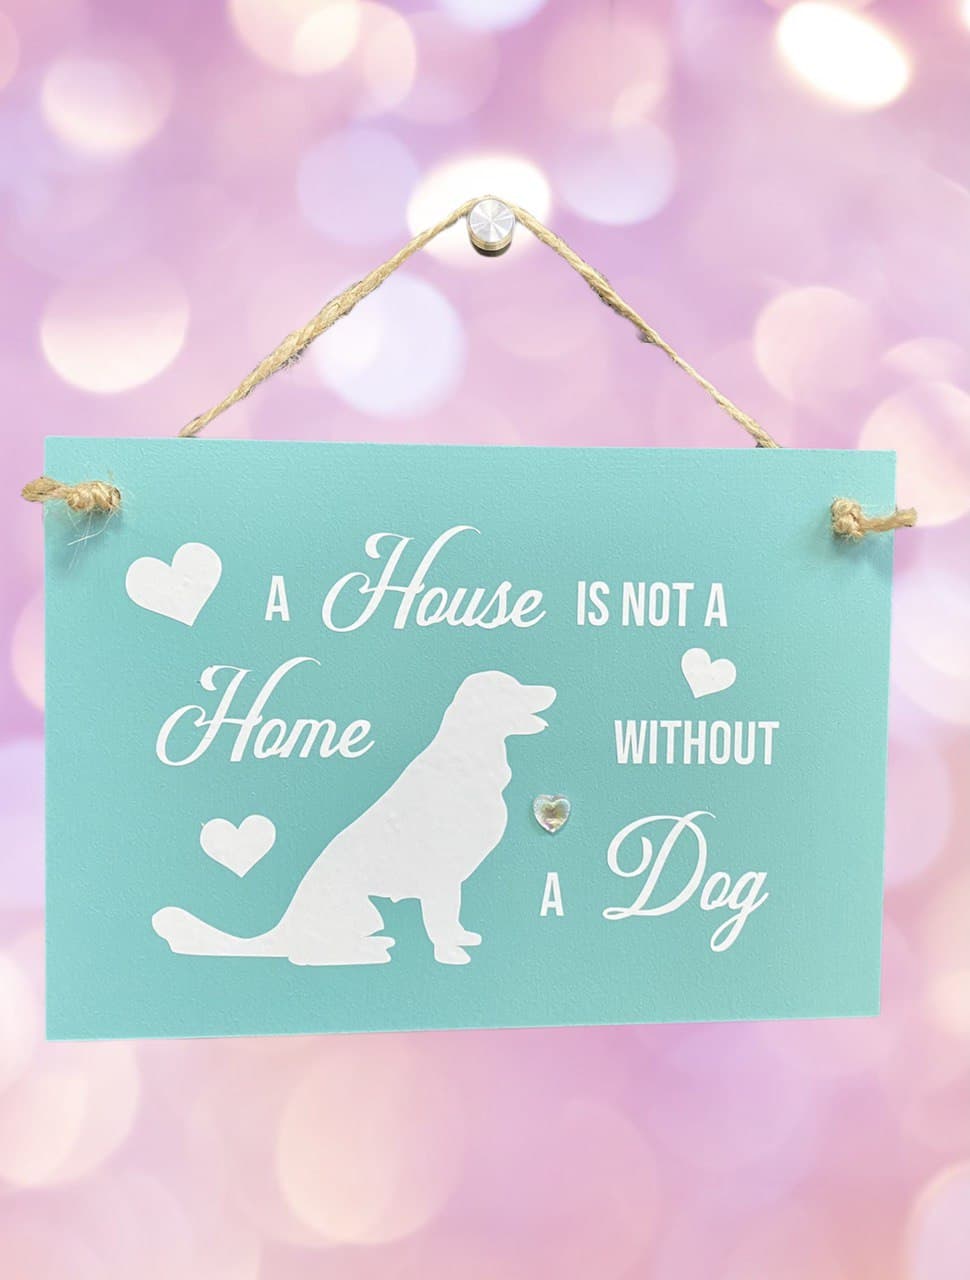 Casa sin perro